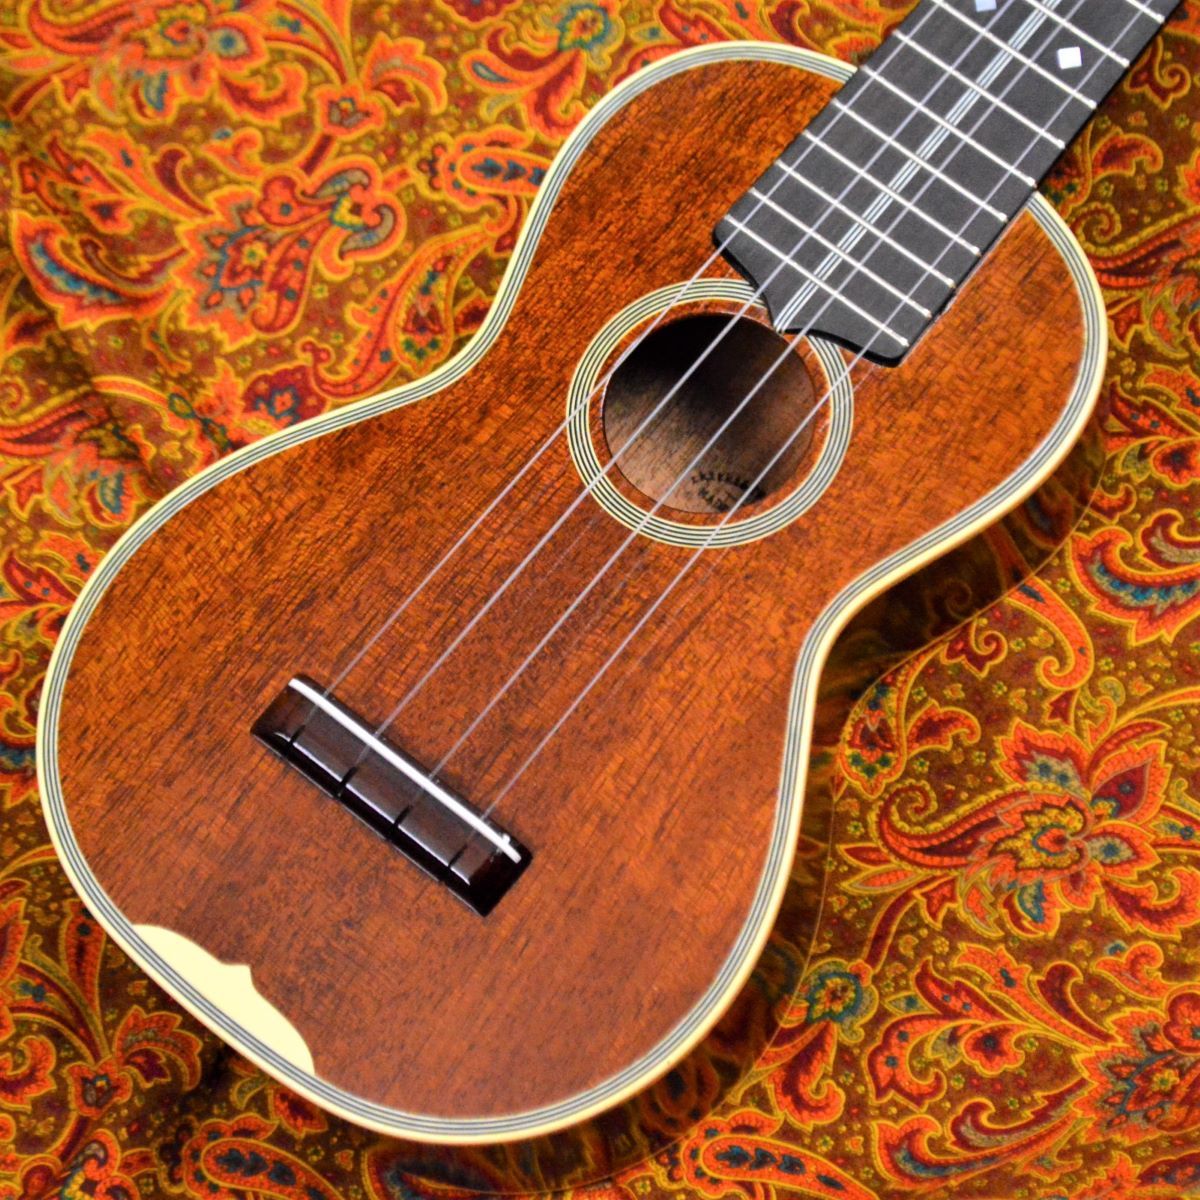 tkitki ukulele　/ ソプラノウクレレAM-C20's